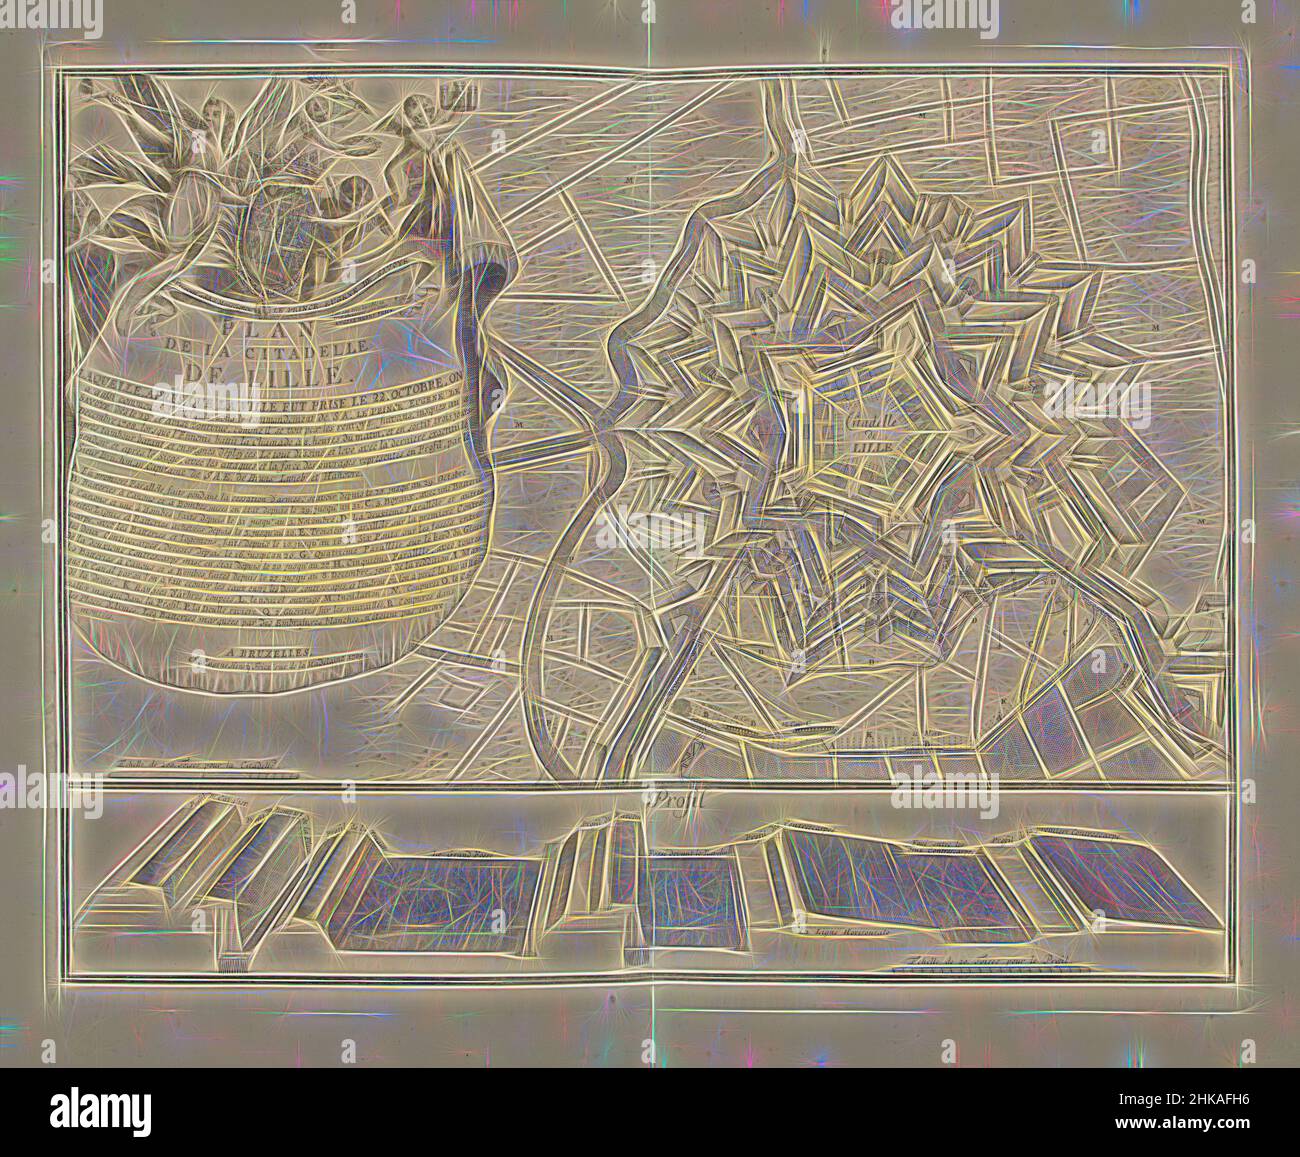 Inspiré par le Plan de la citadelle de Lille, 1708, Plan de la citadelle de Lille. Laquelle, après que la ville ait fait levier le 22. octobre, sur une aussi commentée d'attaquer (...), Plan de la citadelle de Lille (Rijssel), assiégée à partir d'octobre 22 par les alliés sous le prince Eugenius de Savoie et capturée, réimaginée par Artop. L'art classique réinventé avec une touche moderne. Conception de lumière chaleureuse et gaie, de luminosité et de rayonnement de lumière. La photographie s'inspire du surréalisme et du futurisme, embrassant l'énergie dynamique de la technologie moderne, du mouvement, de la vitesse et révolutionne la culture Banque D'Images